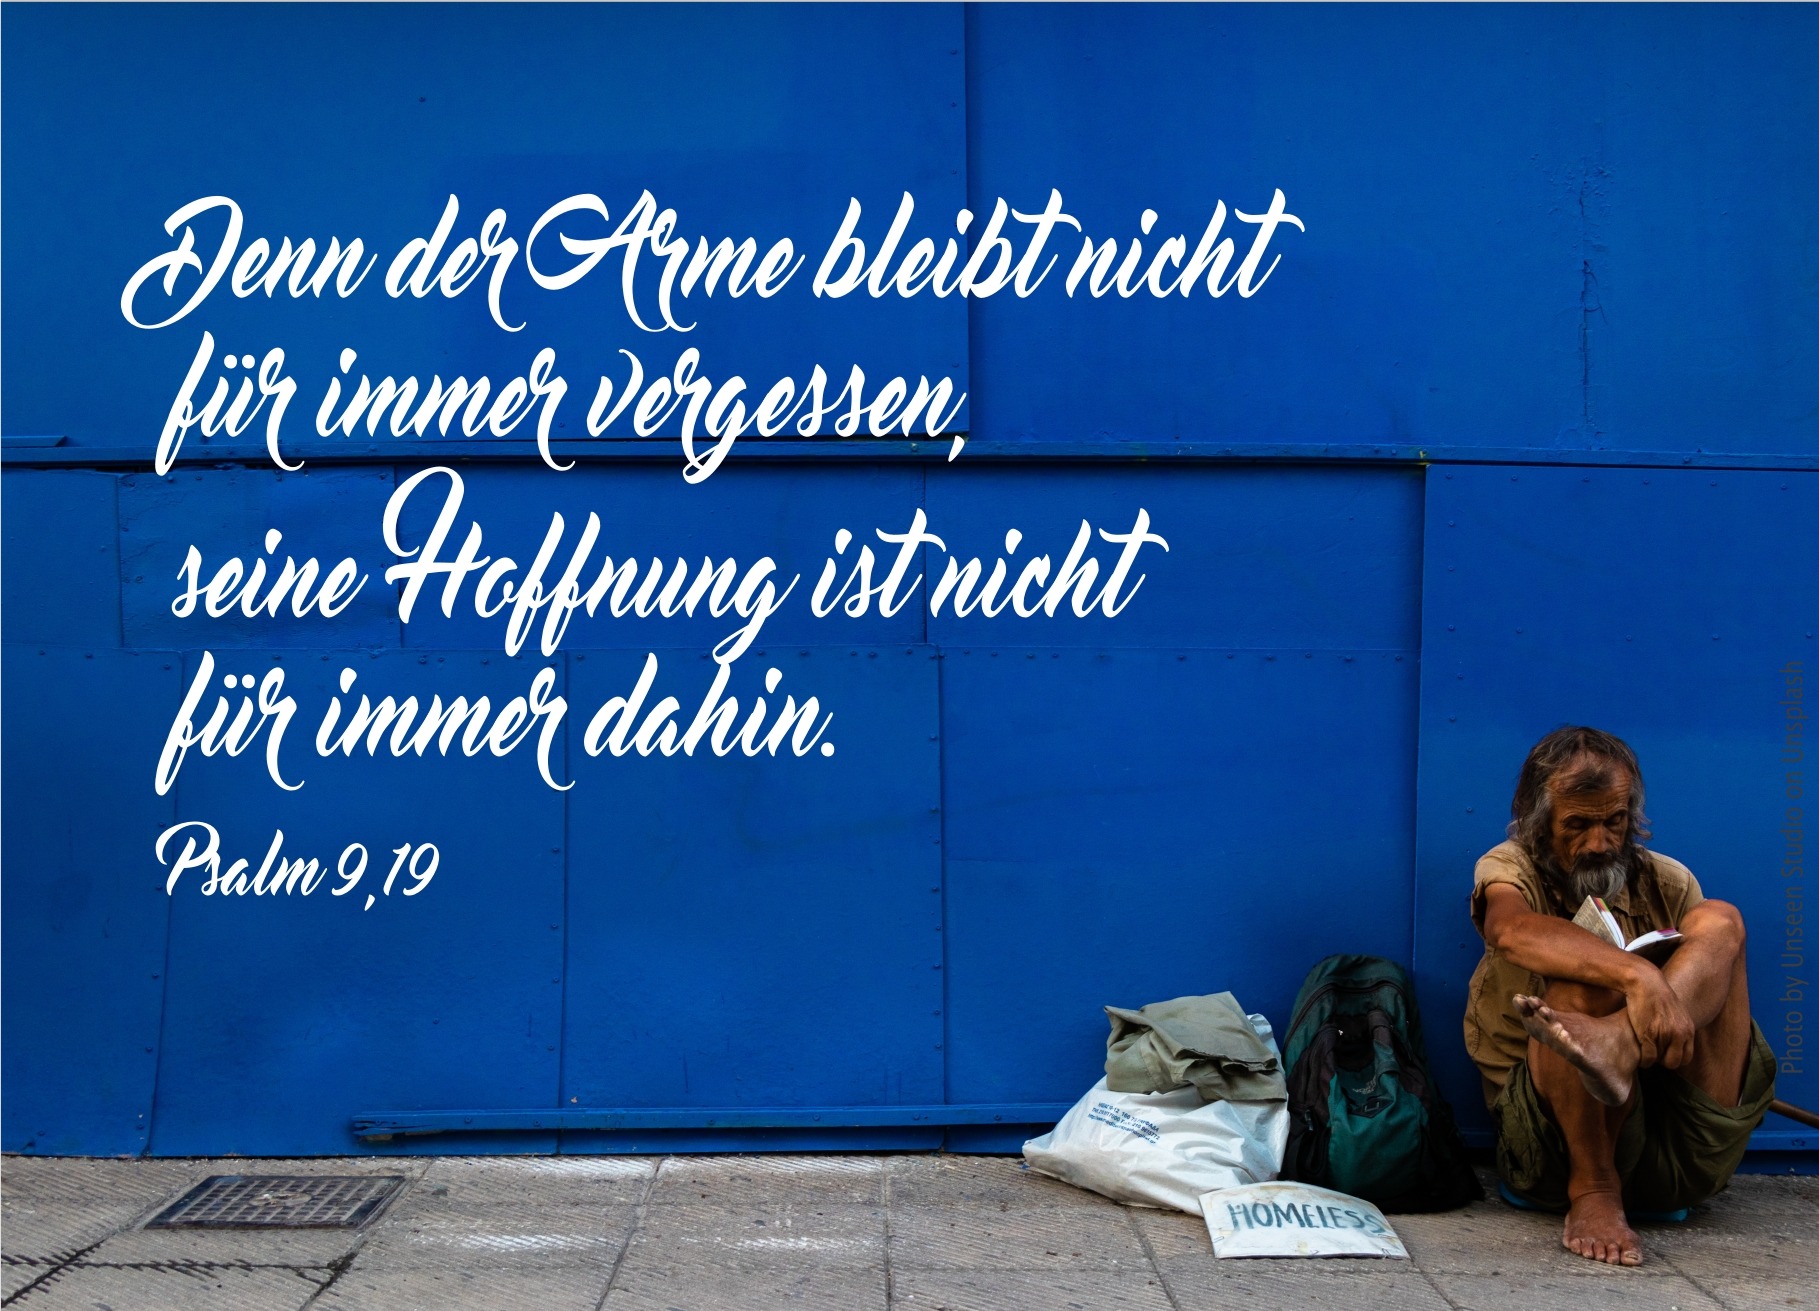 alt="Obdachloser_vor_blauer_Wand_erwartet_bibelhoerbuch_5000_werden_satt"